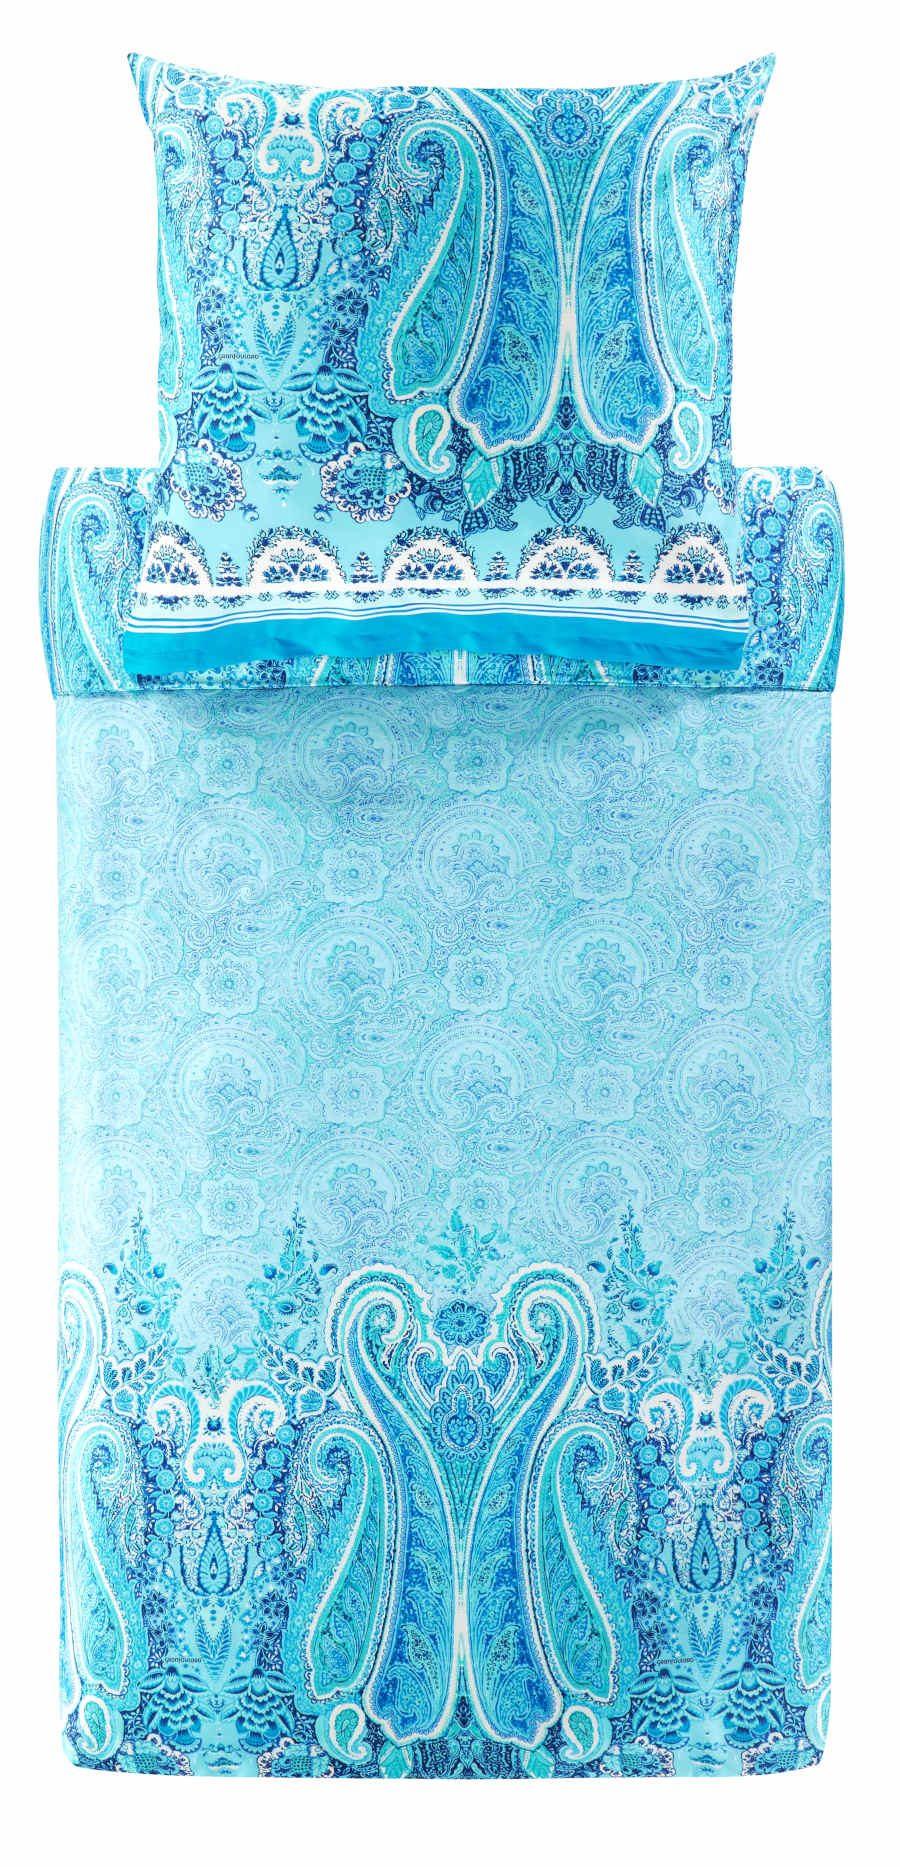 Bassetti Satin Bettwäsche Mergellina blau aus 100% Baumwolle, 135x200 cm